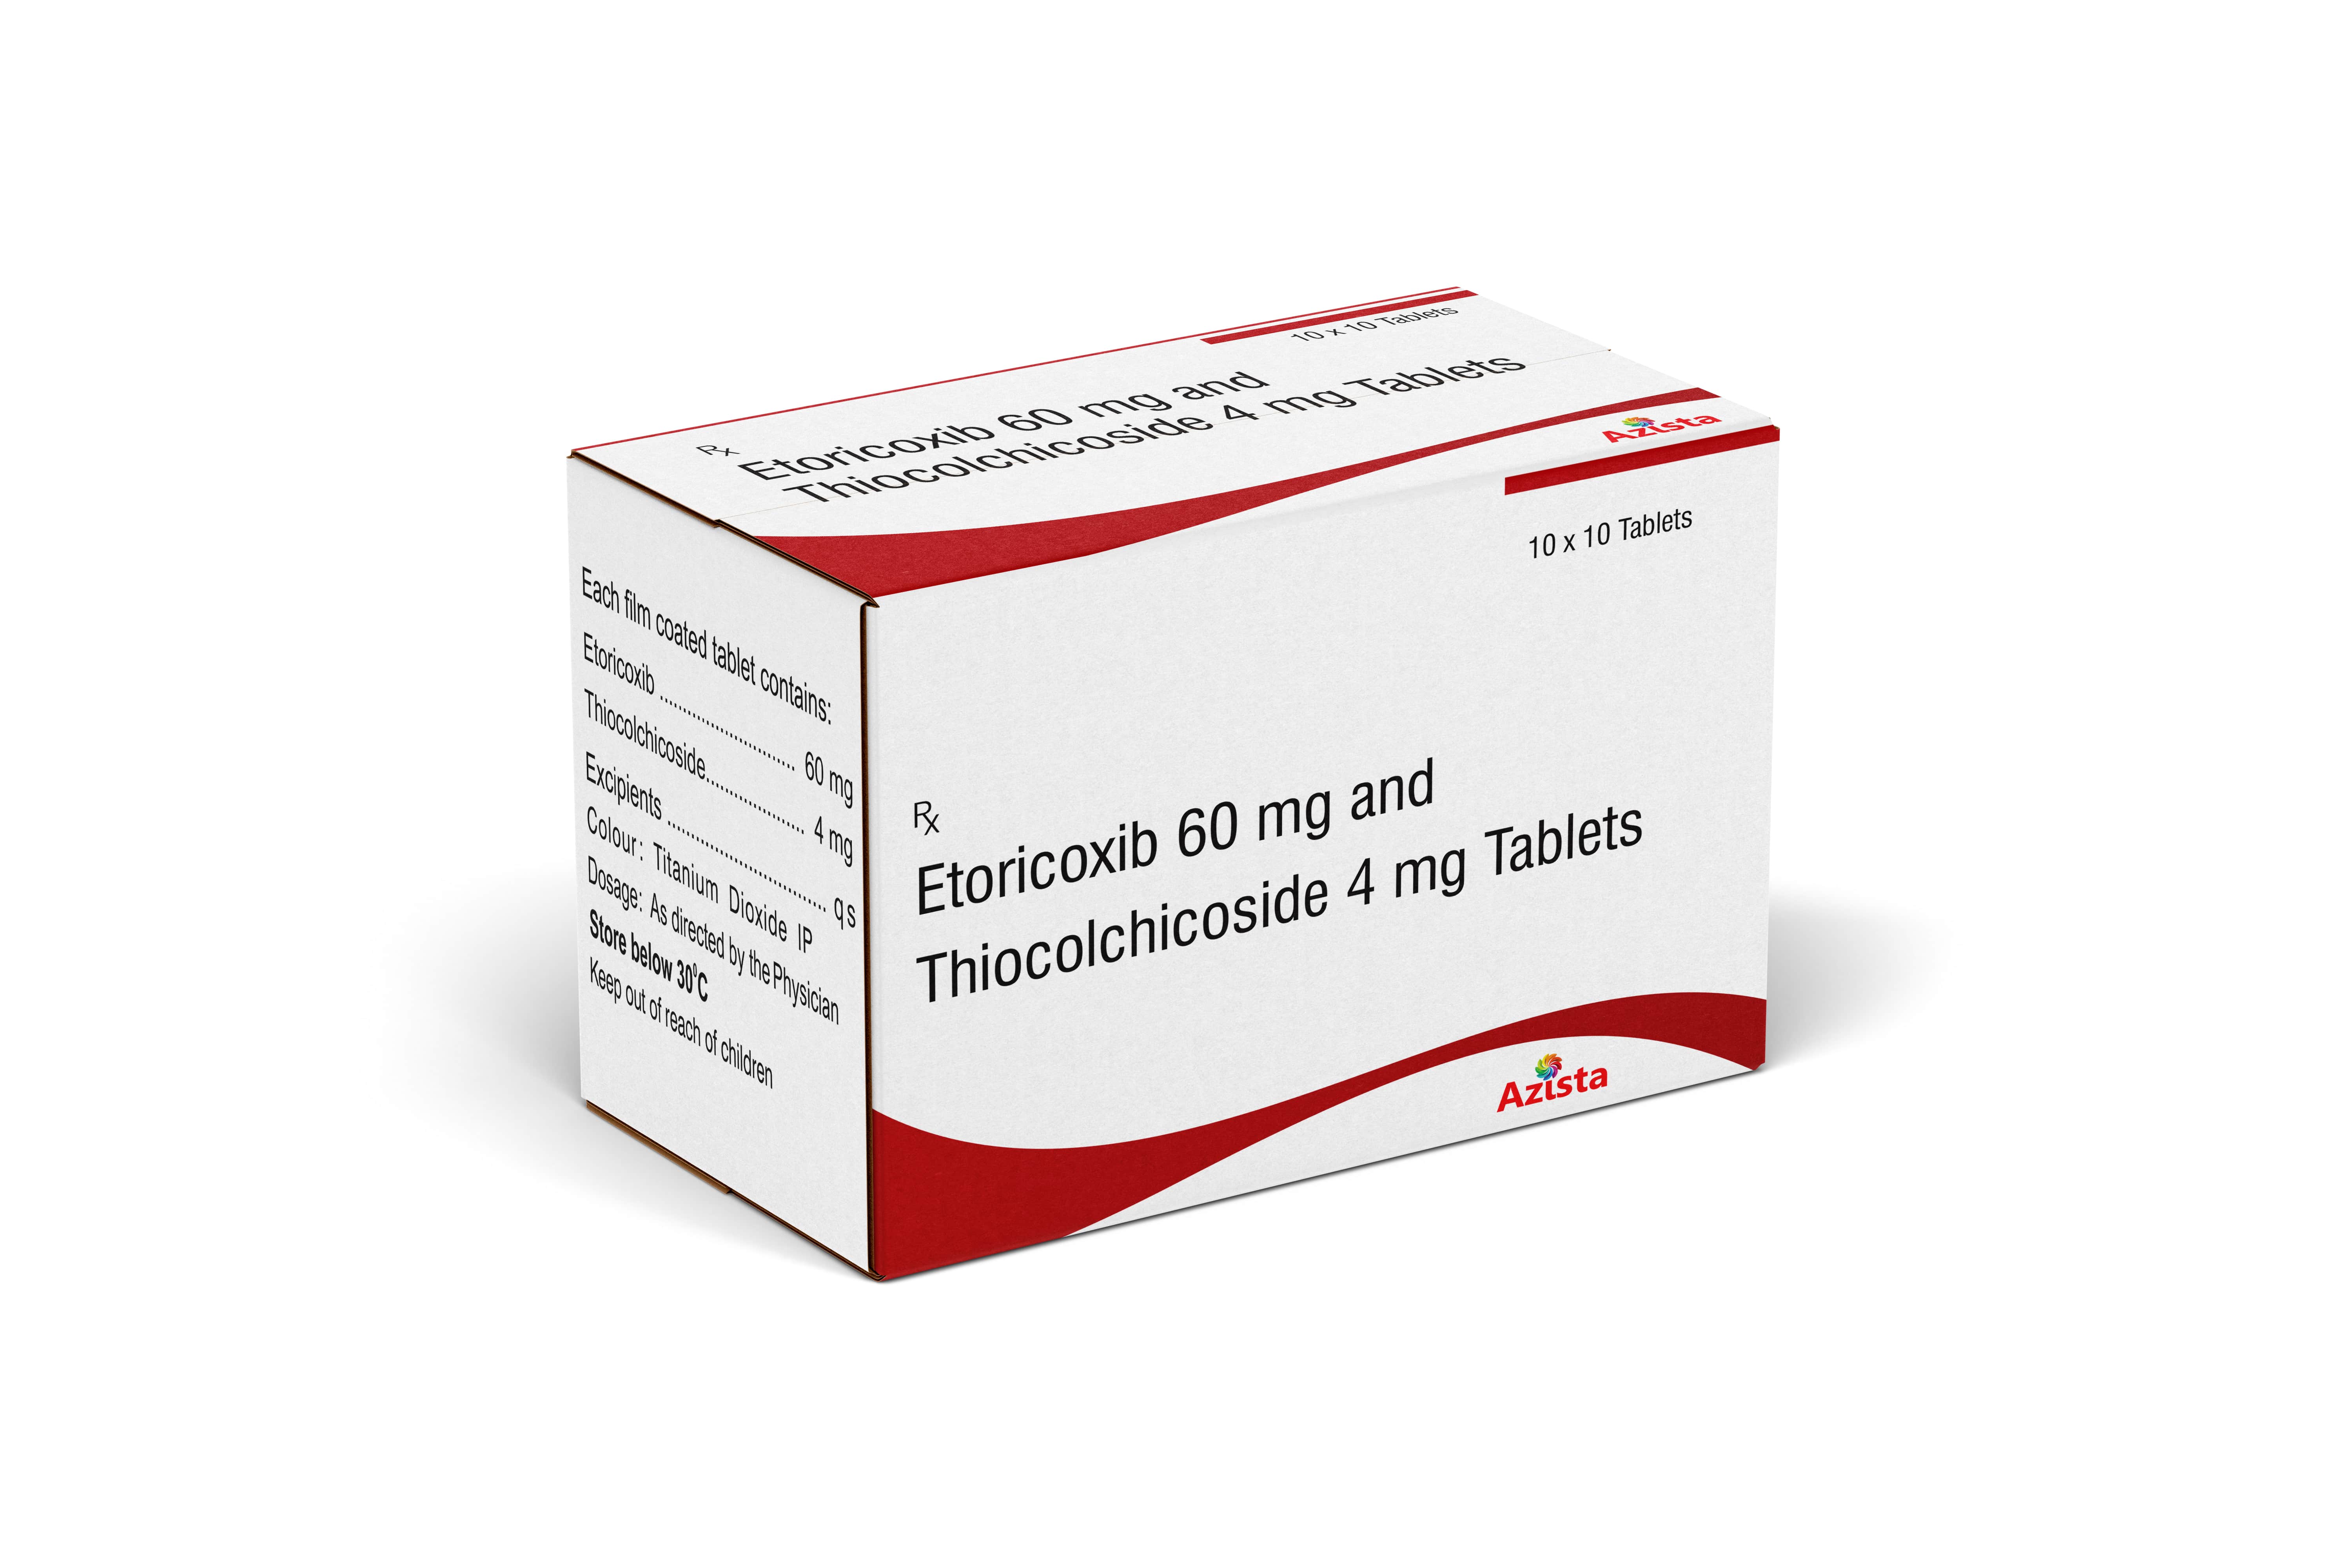 Etoricoxib 60 mg + Thiocolchicoside 4 mg Tablets